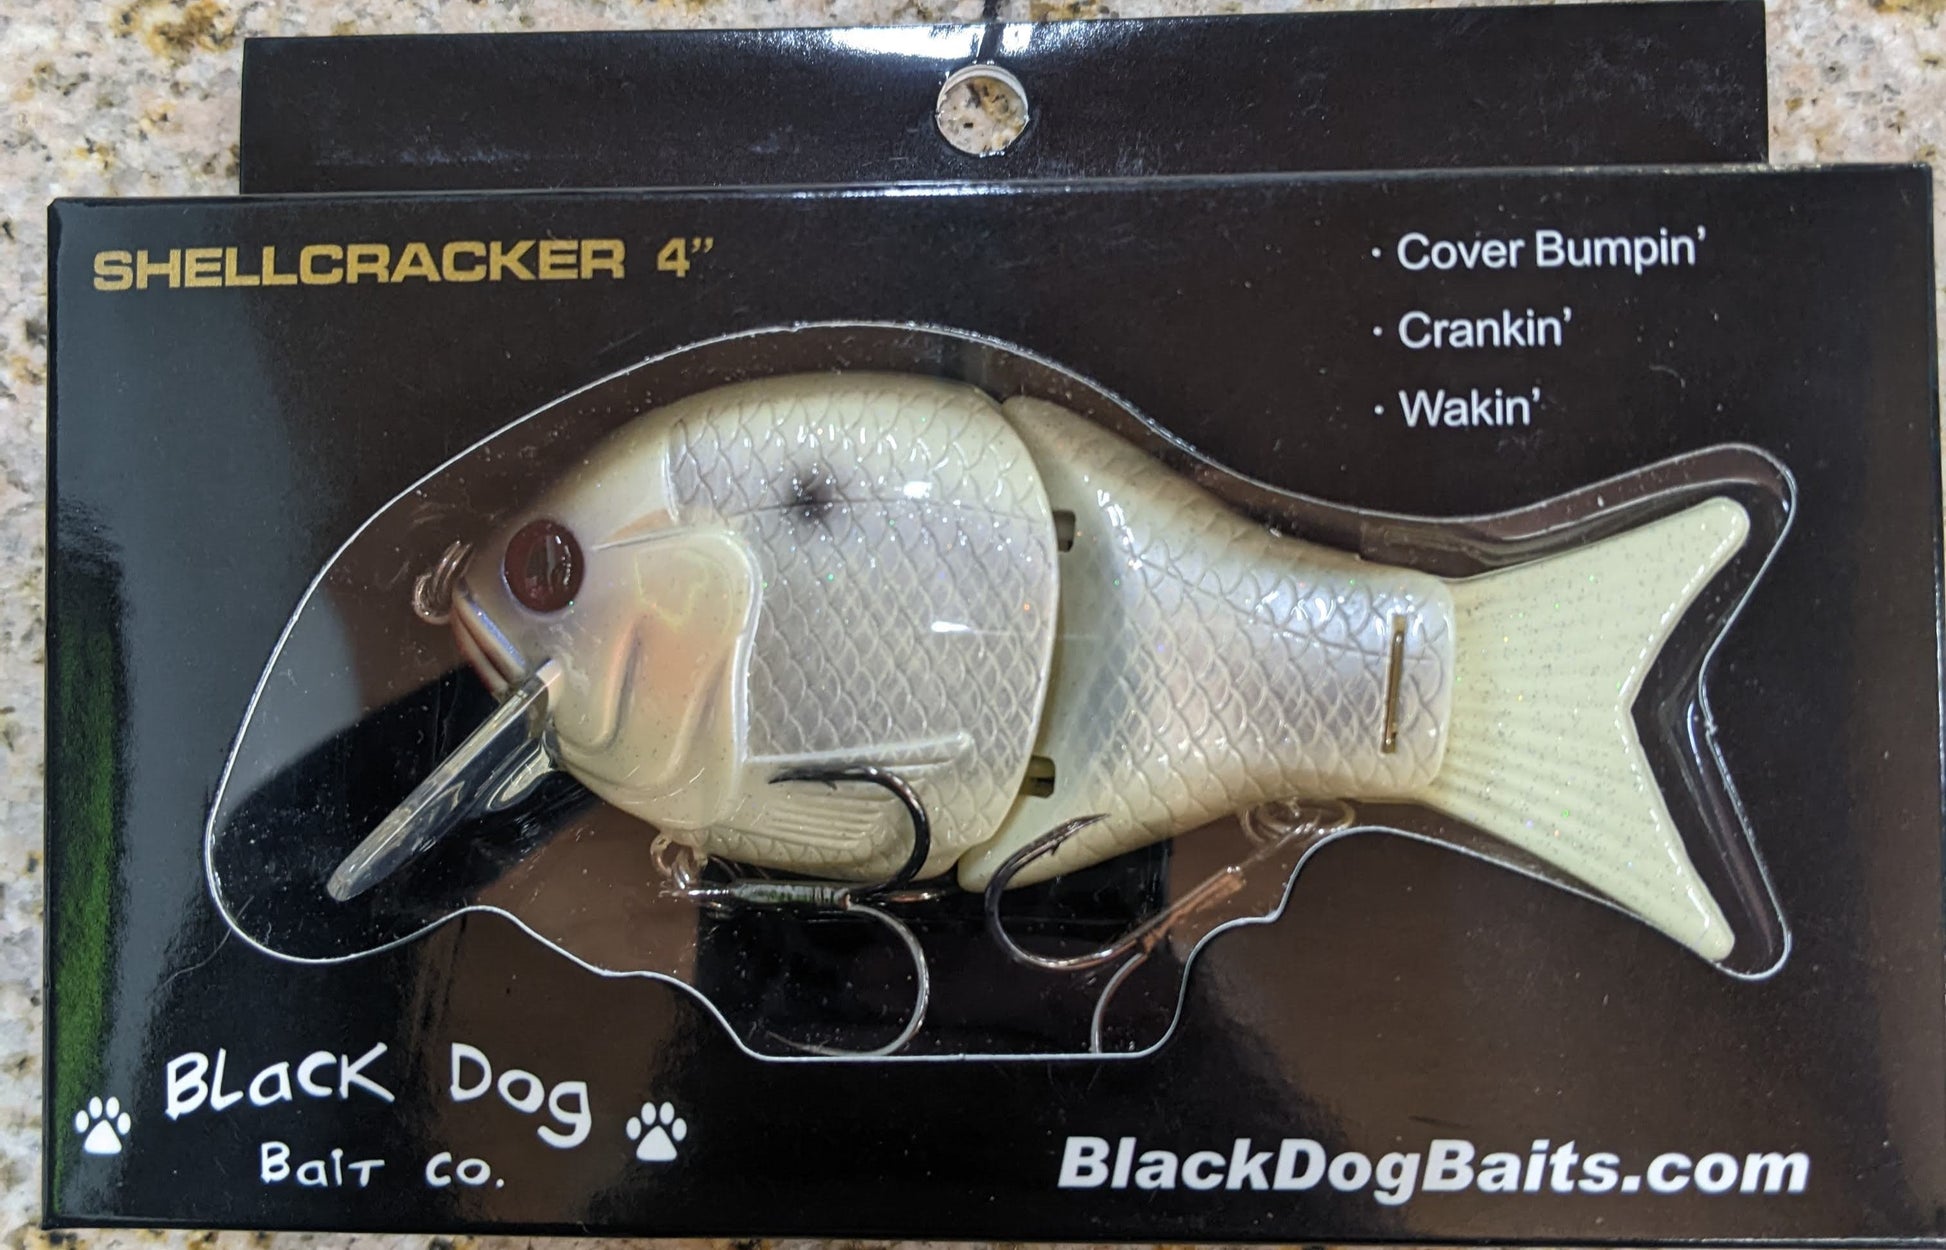 Black Dog Baits' Shellcracker G2 - Member Reviews - Swimbait